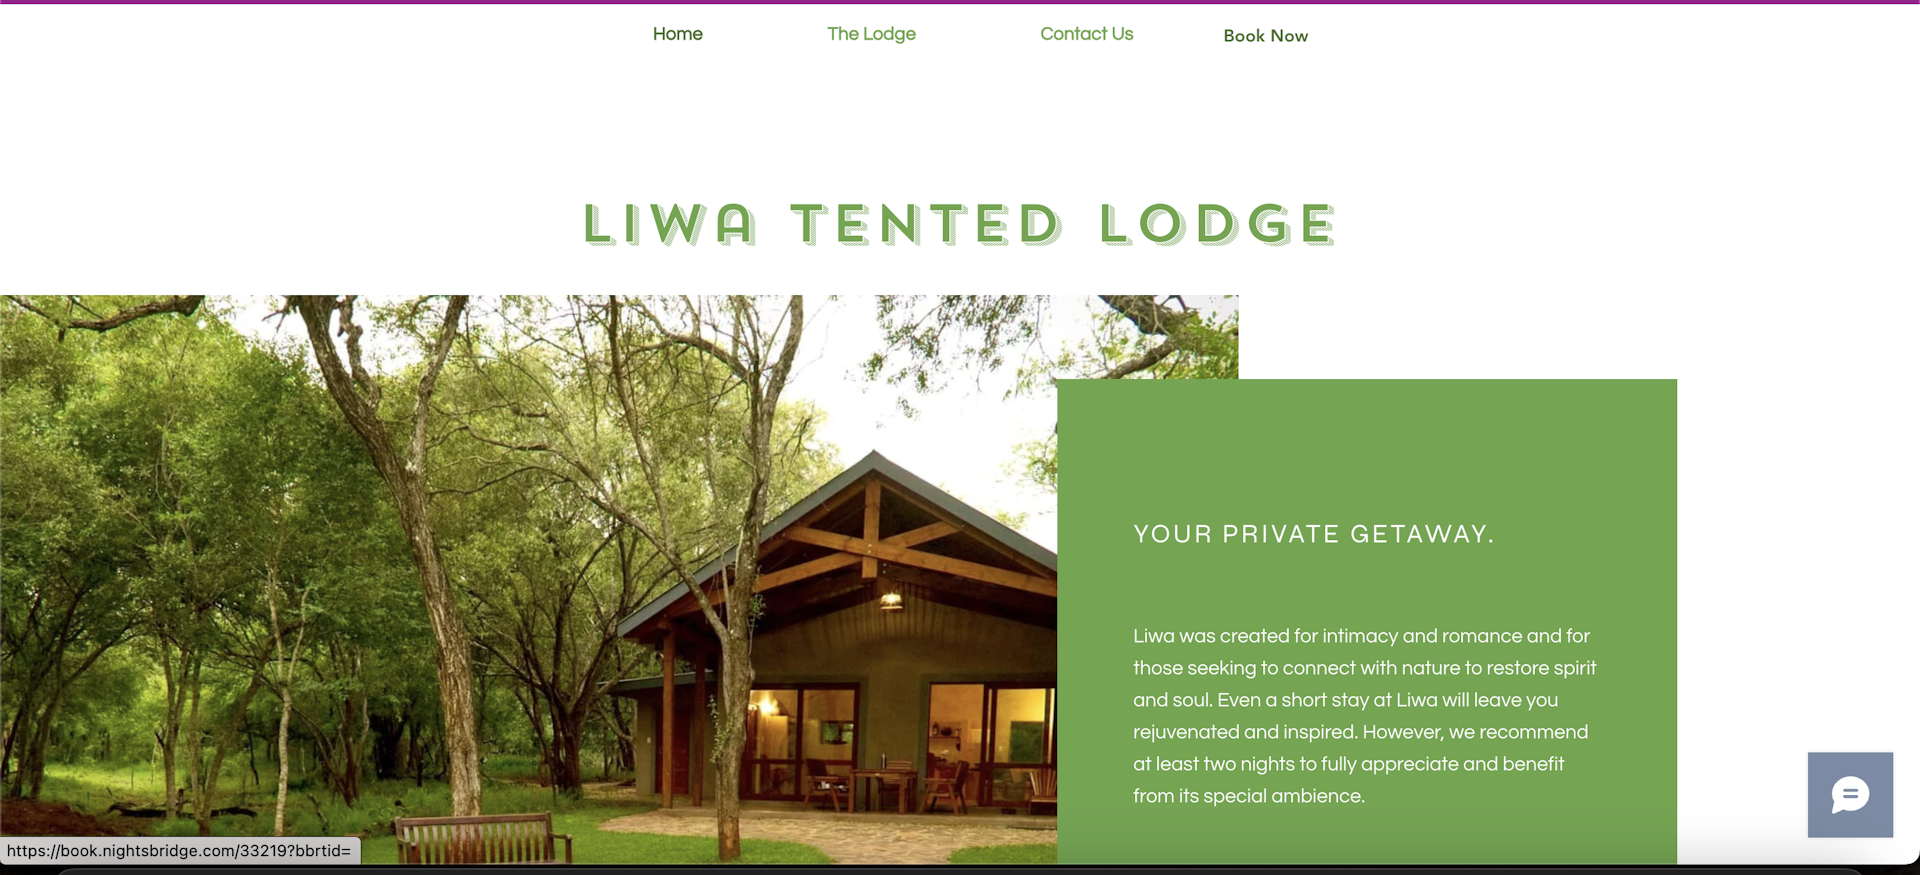 Liwa Tented Lodge Website Boosts Bookings